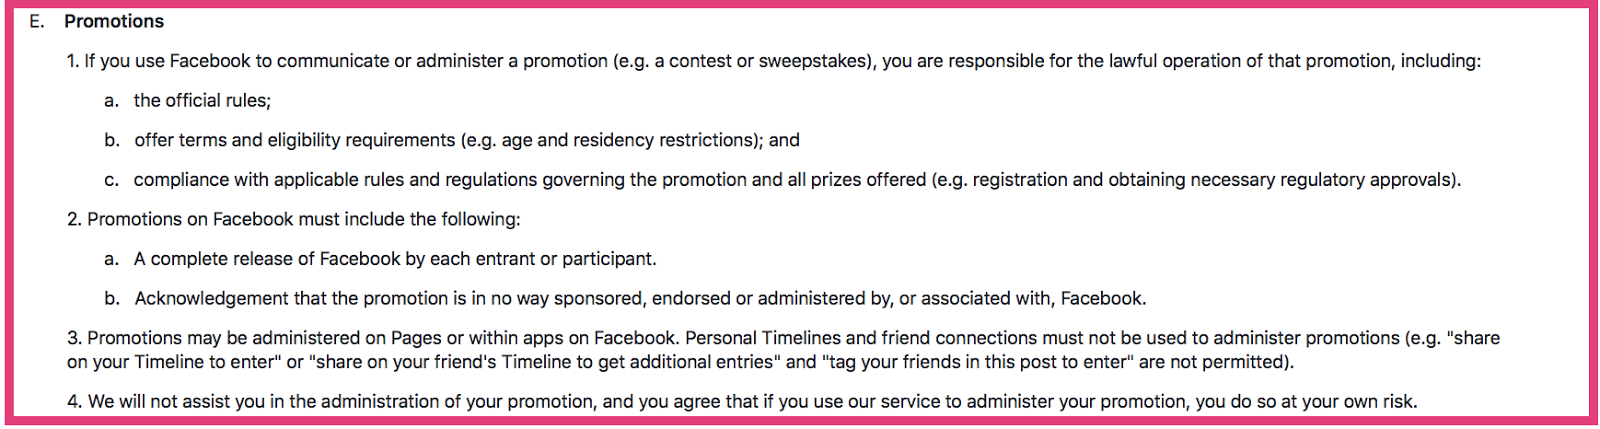 augmenter la portée organique de Facebook avec les règles du concours